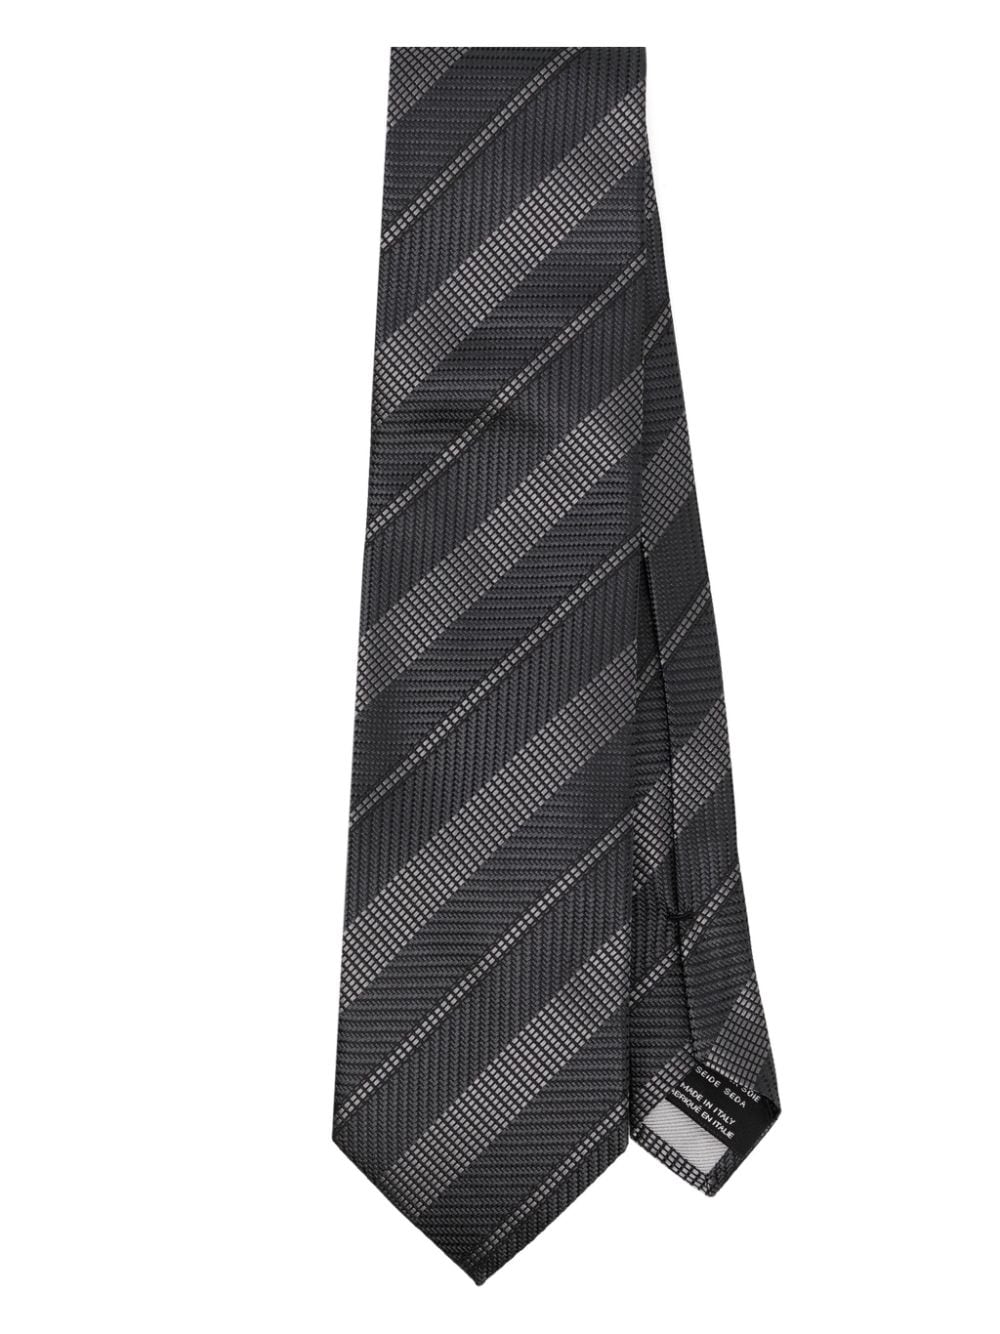 Tom Ford Striped Jacquard Tie In Black